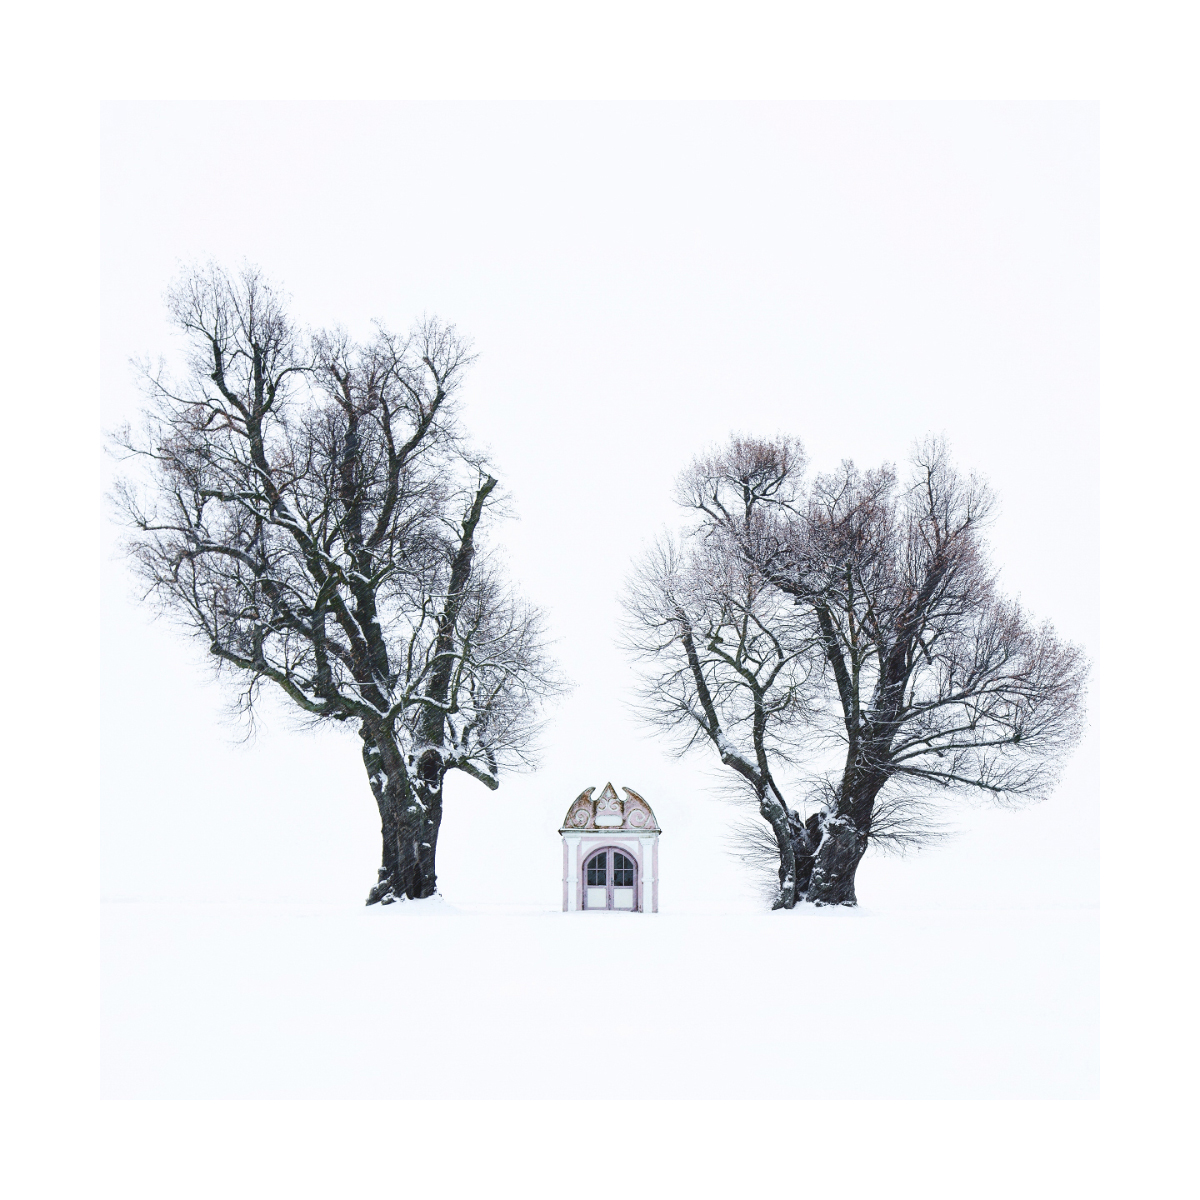 Фотопроект Килиана Шонбергера: Зима в квадратах